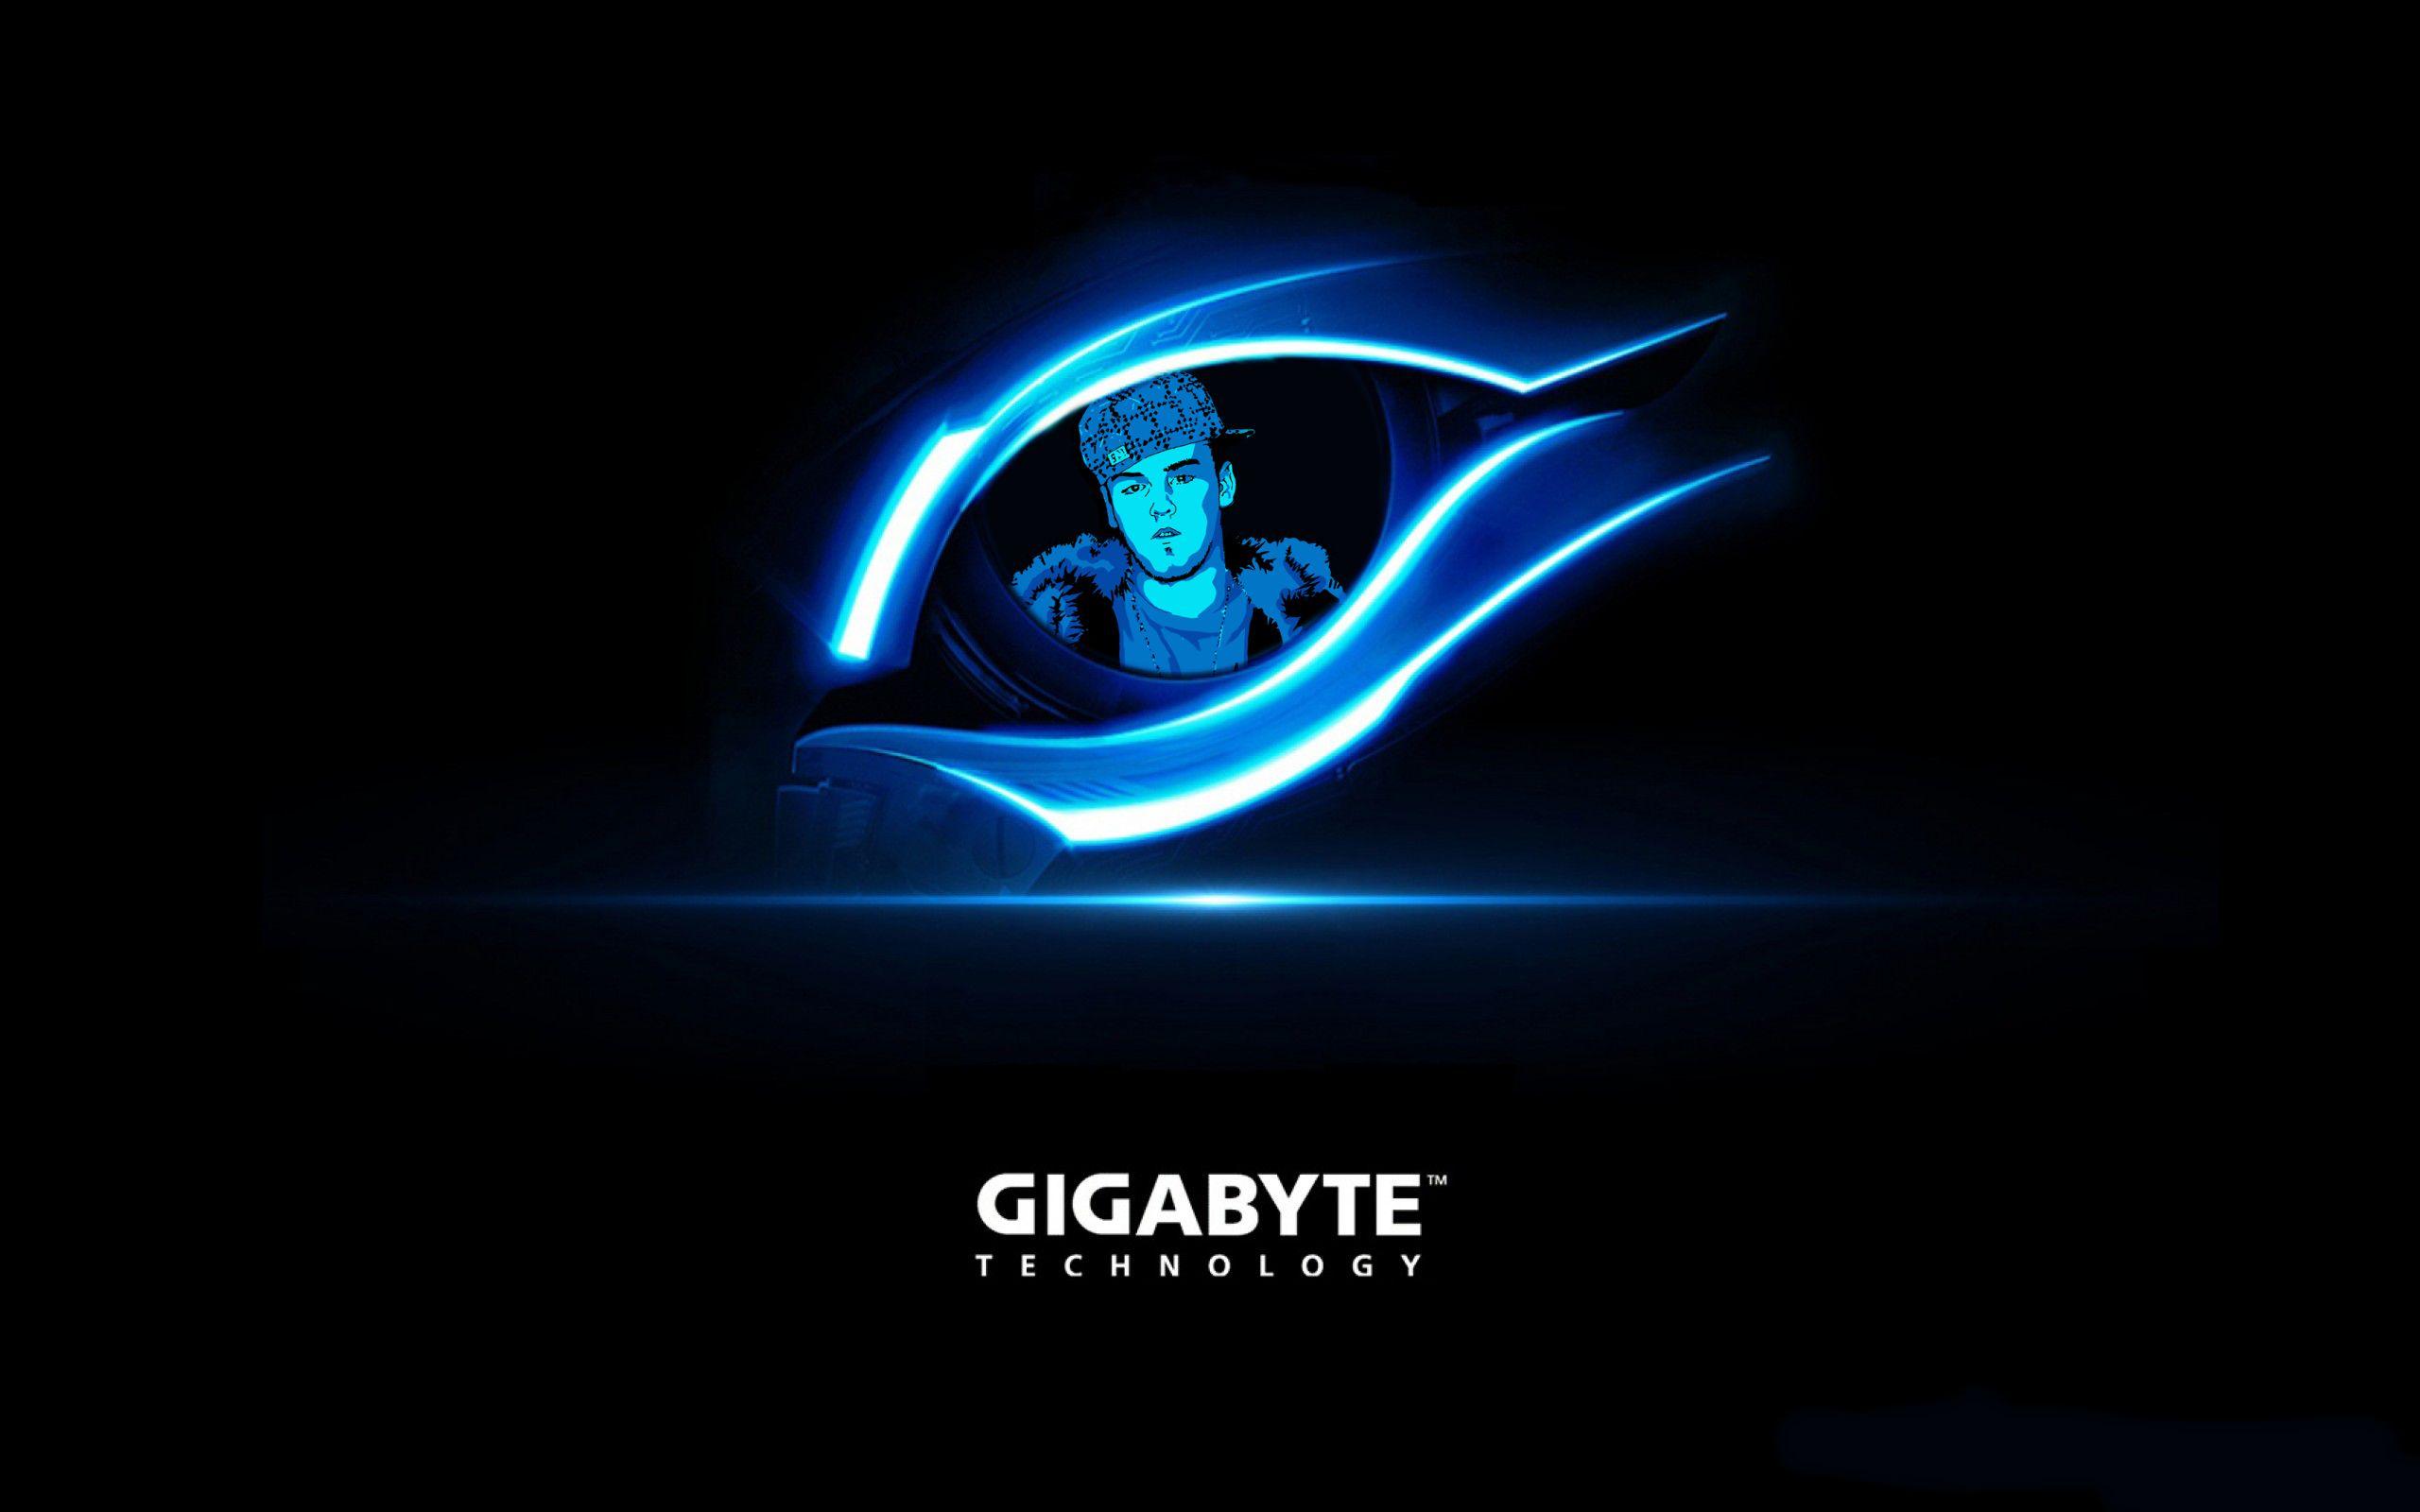 New Gigabyte Logo - I Made a Wallpaper With Gigabyte's New Logo